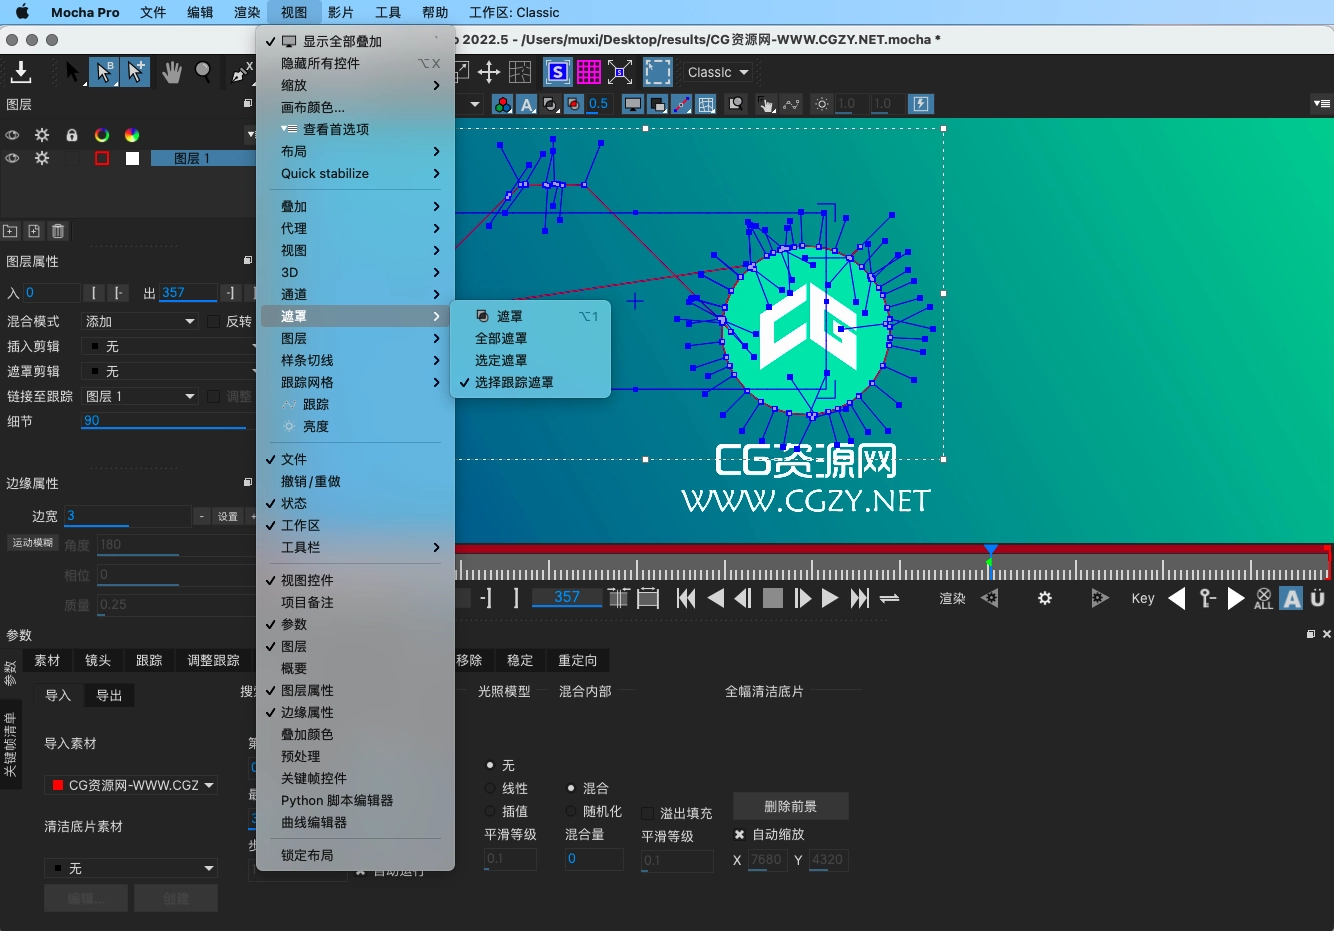 【中文汉化】摄像机反求跟踪摩卡独立软件 Mocha Pro 2022 v9.5.1 Mac苹果版一键安装Mac软件、精品推荐